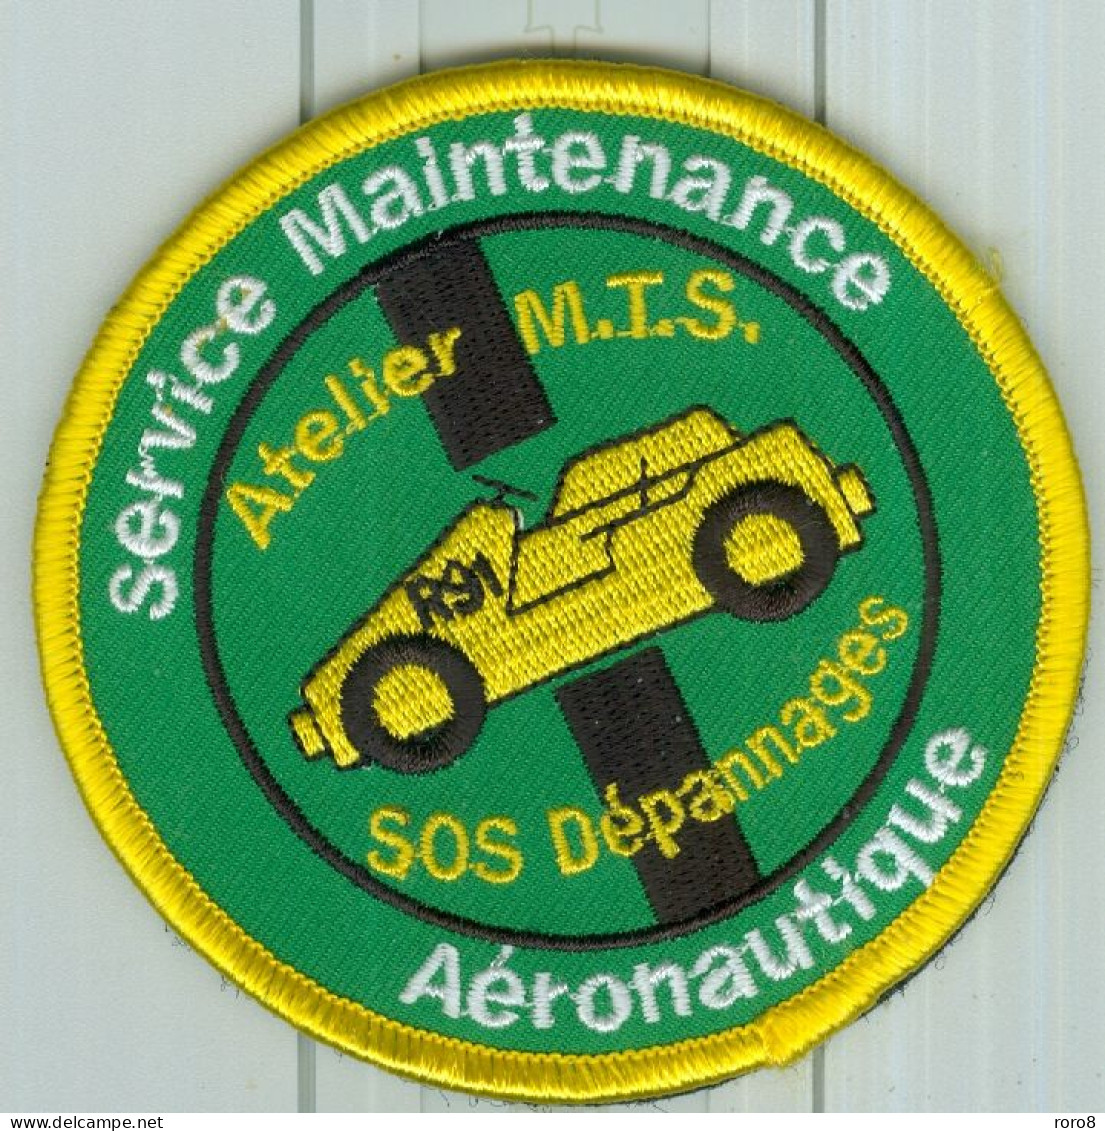 PATCH - MARINE NATIONALE - Service Maintenance Aéronautique R91 Atelier M.T.S.SOS Dépannages  R91. - Ecussons Tissu